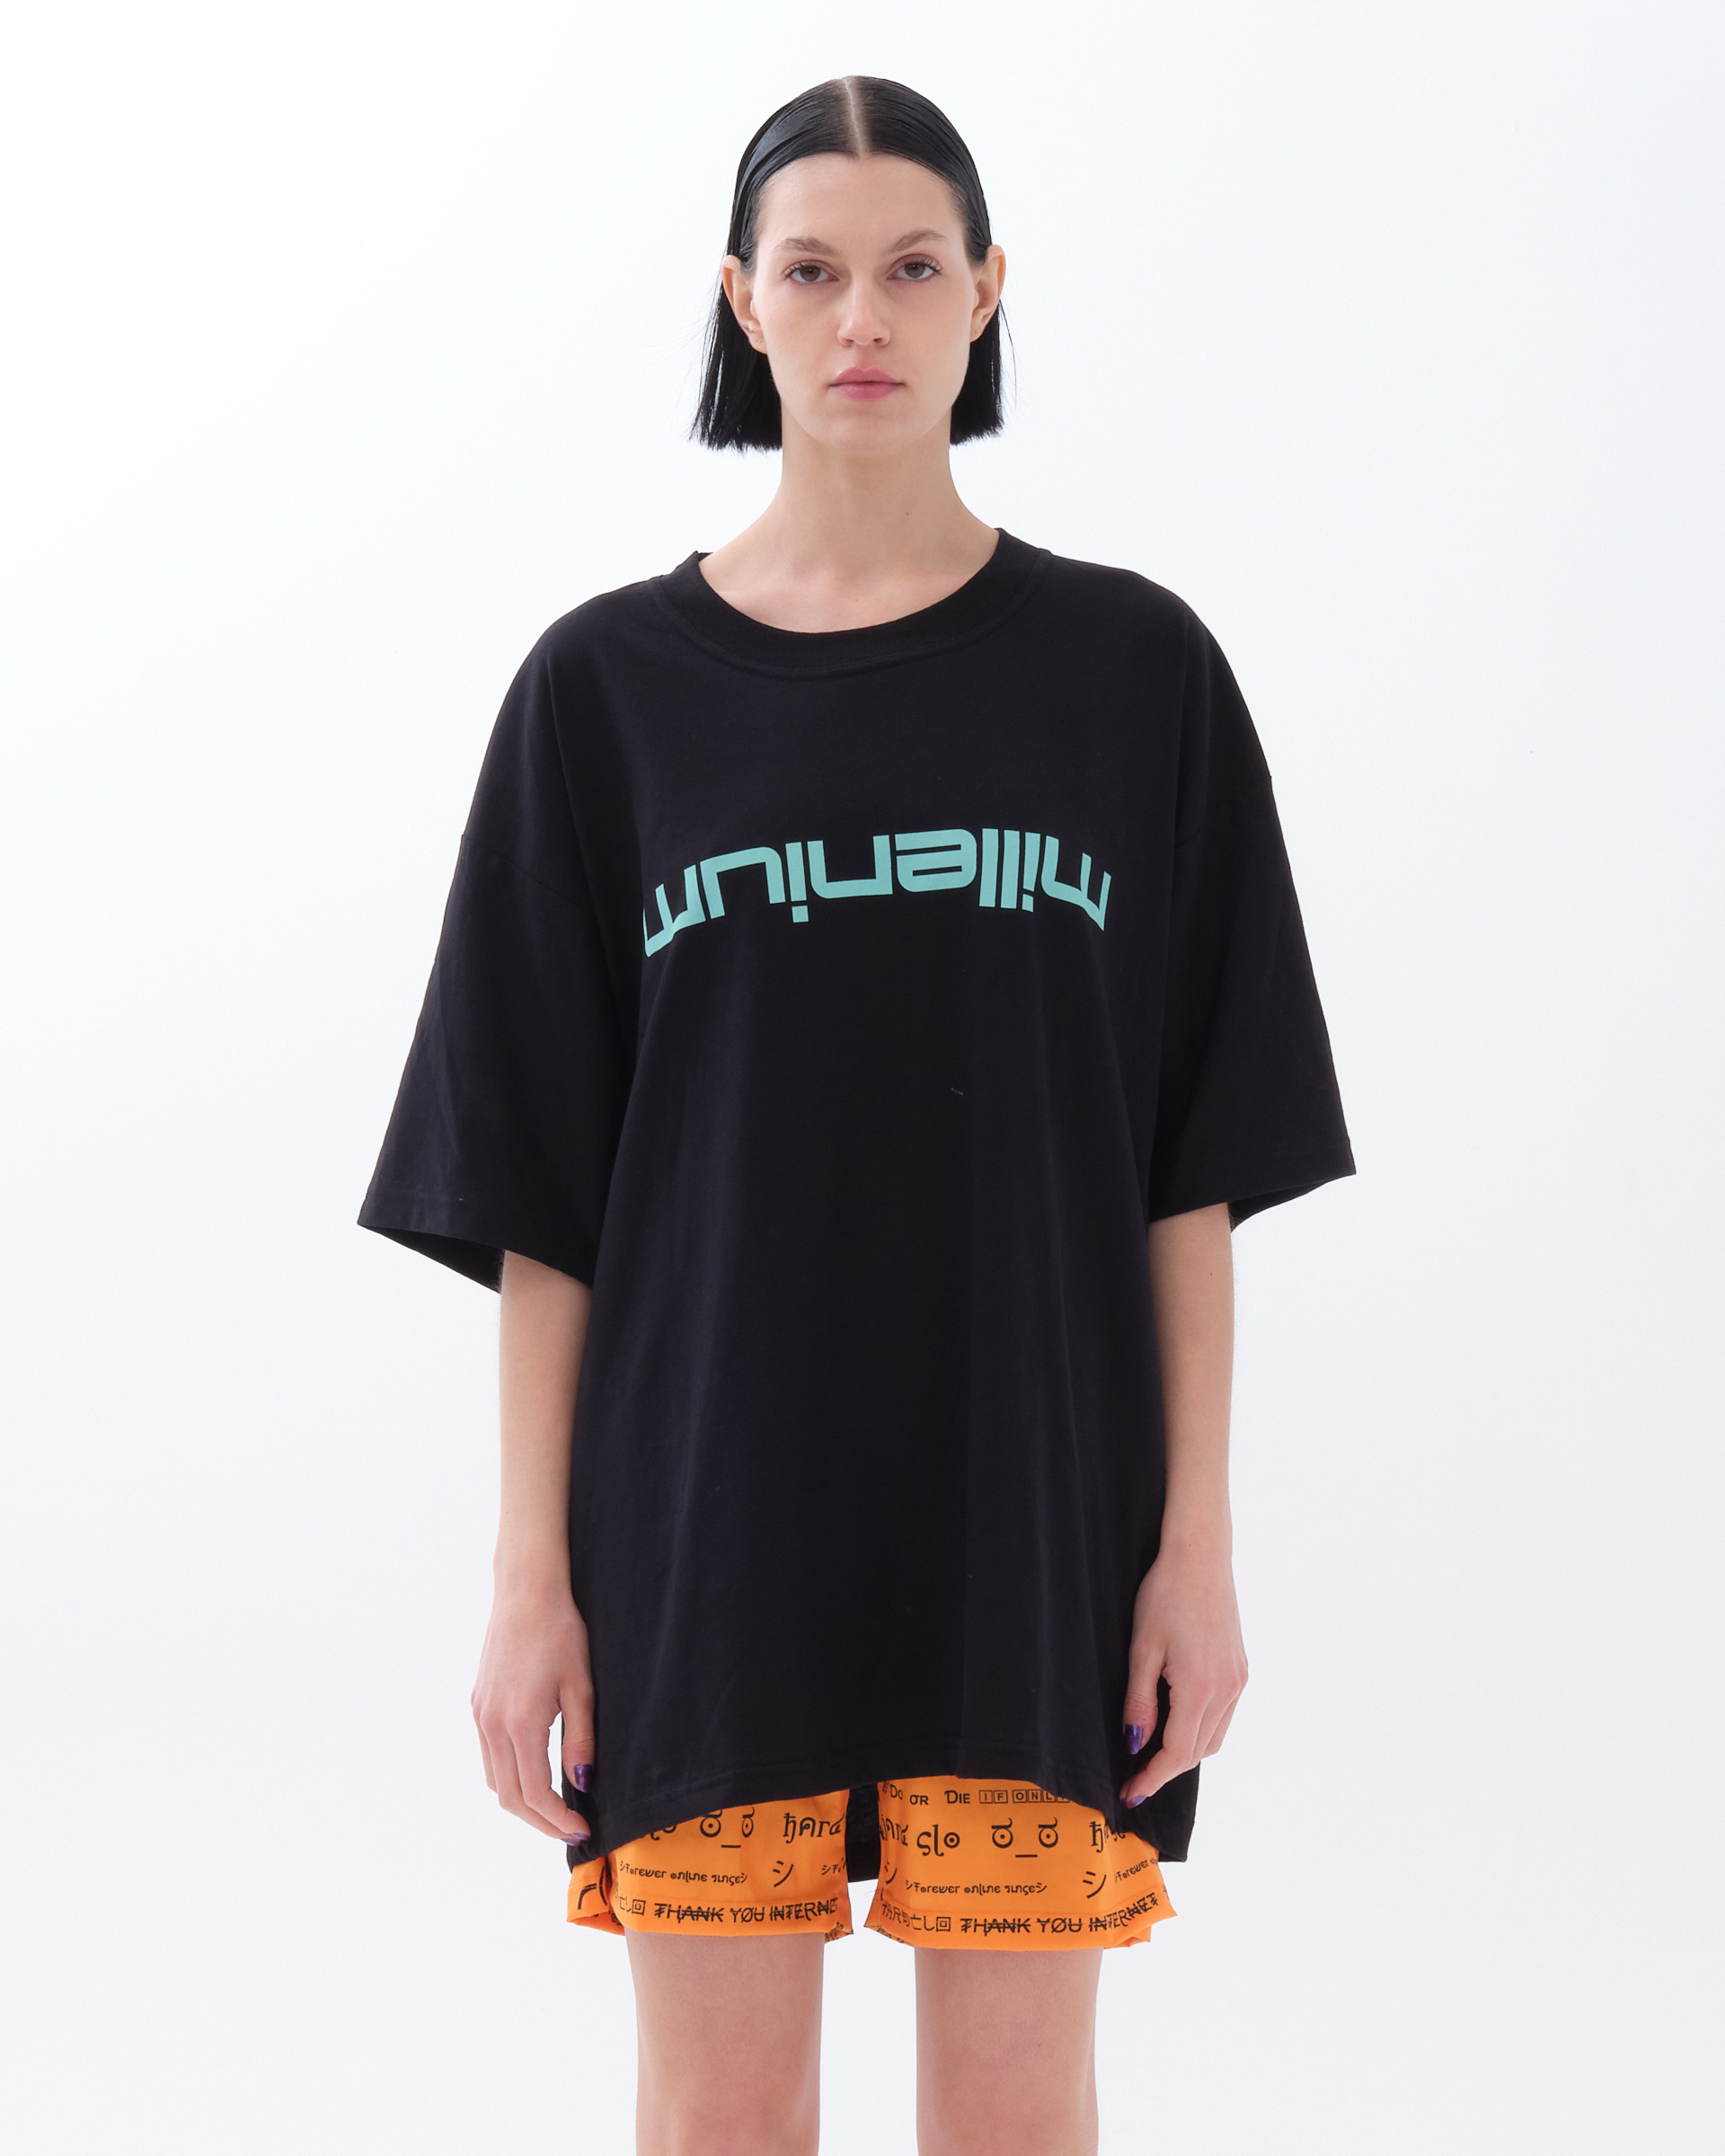 Millennium , T-shirt